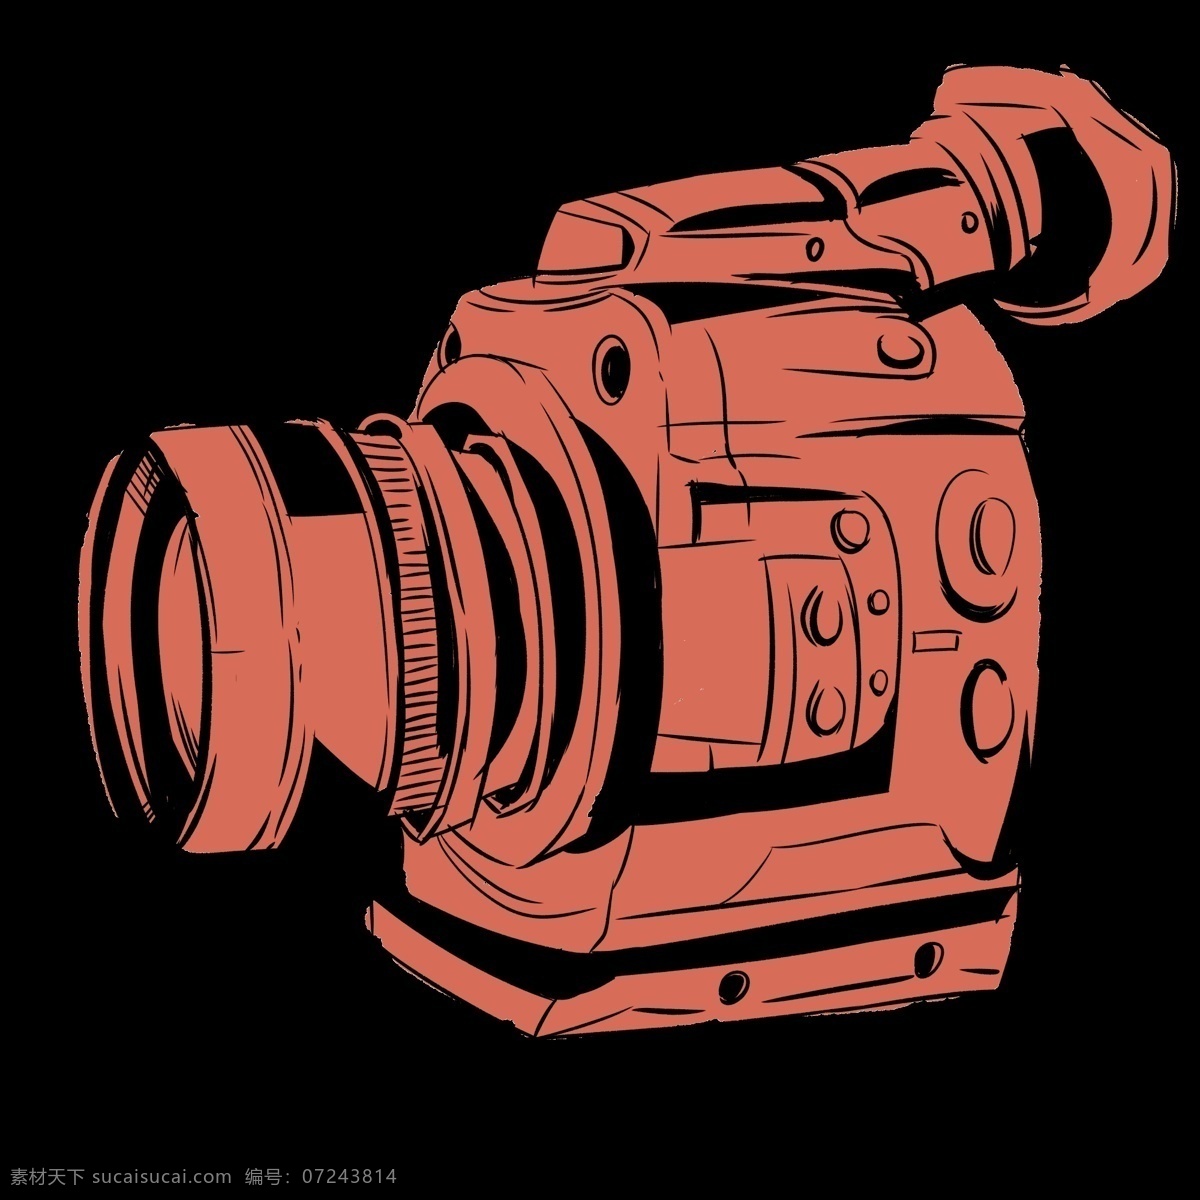 新闻 摄像机 装饰 插画 新闻摄像机 红色的摄像机 漂亮的摄像机 创意摄像机 立体摄像机 记者摄像机